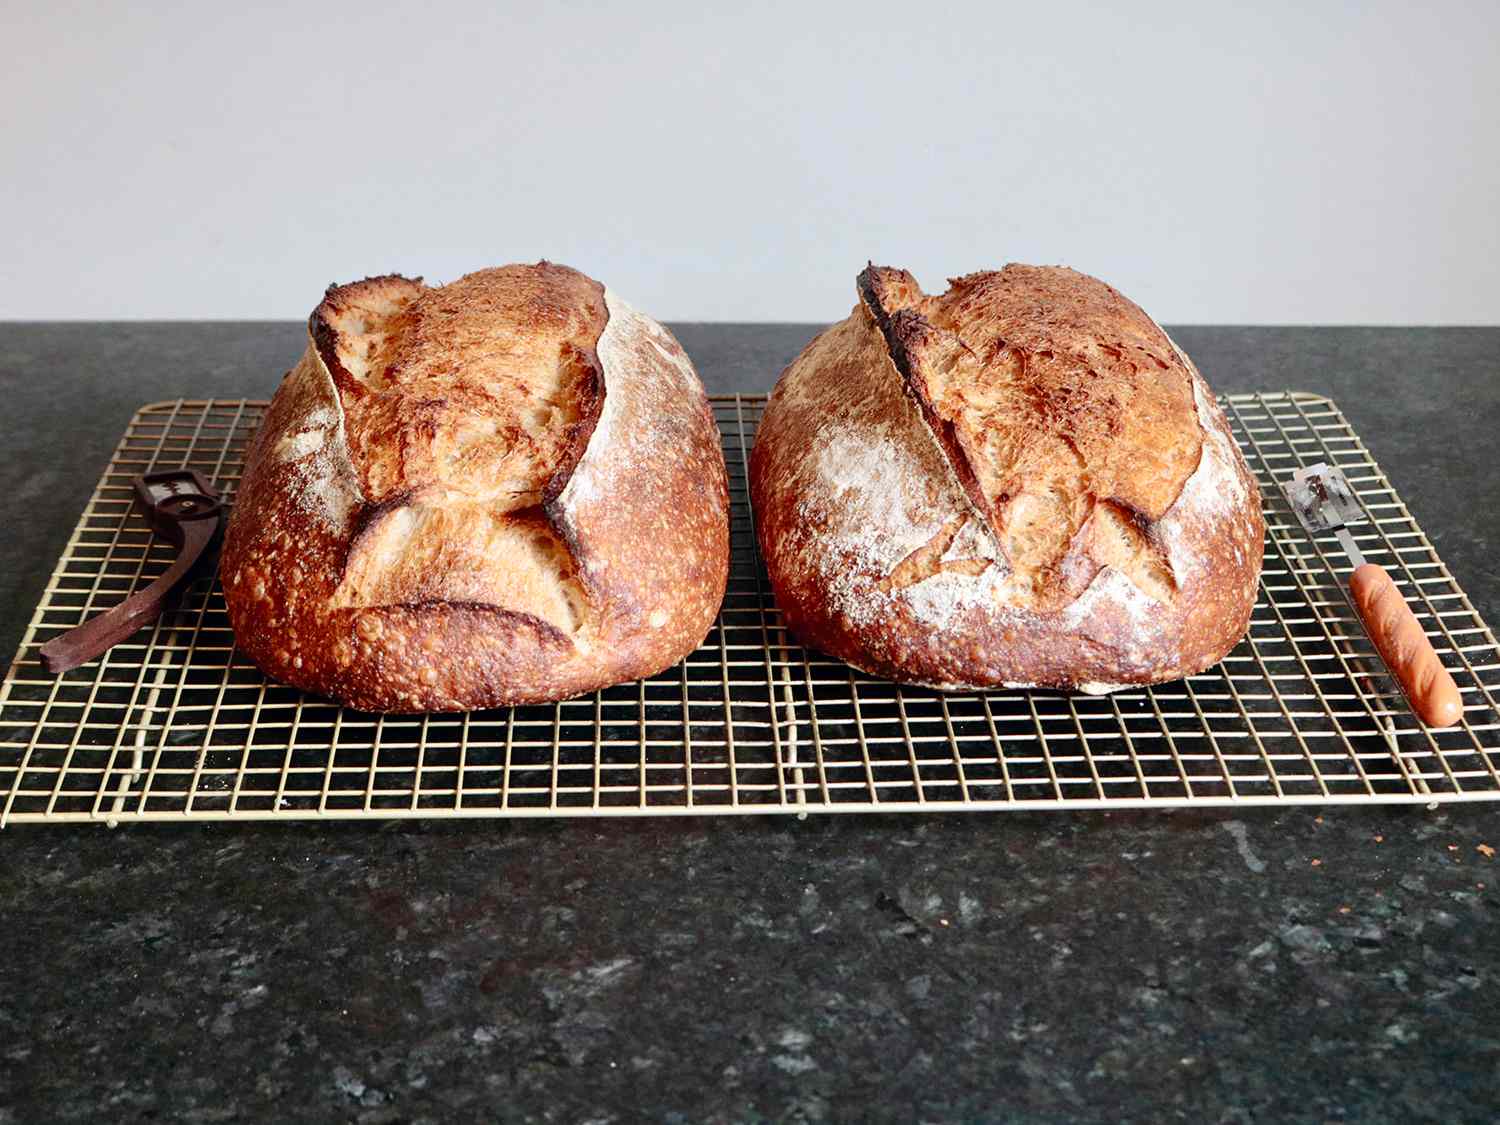 两条酸面包并排放在铁丝架上，旁边是一条直面包腿和一条弯面包腿。